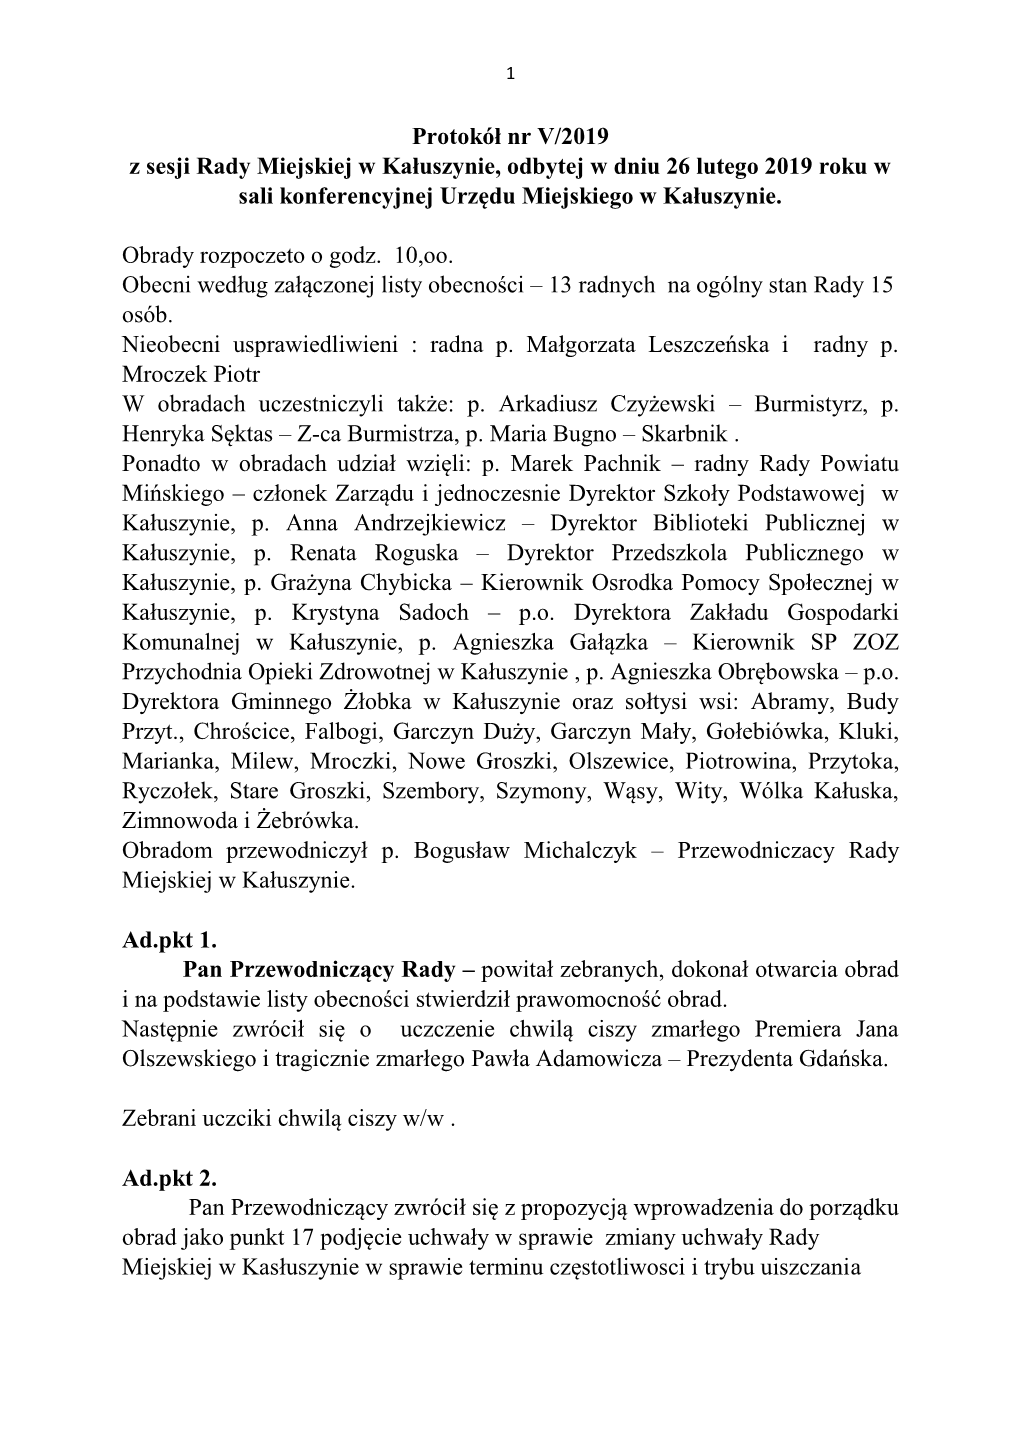 Protokół Nr V/2019 Z Sesji Rady Miejskiej W Kałuszynie, Odbytej W Dniu 26 Lutego 2019 Roku W Sali Konferencyjnej Urzędu Miejskiego W Kałuszynie